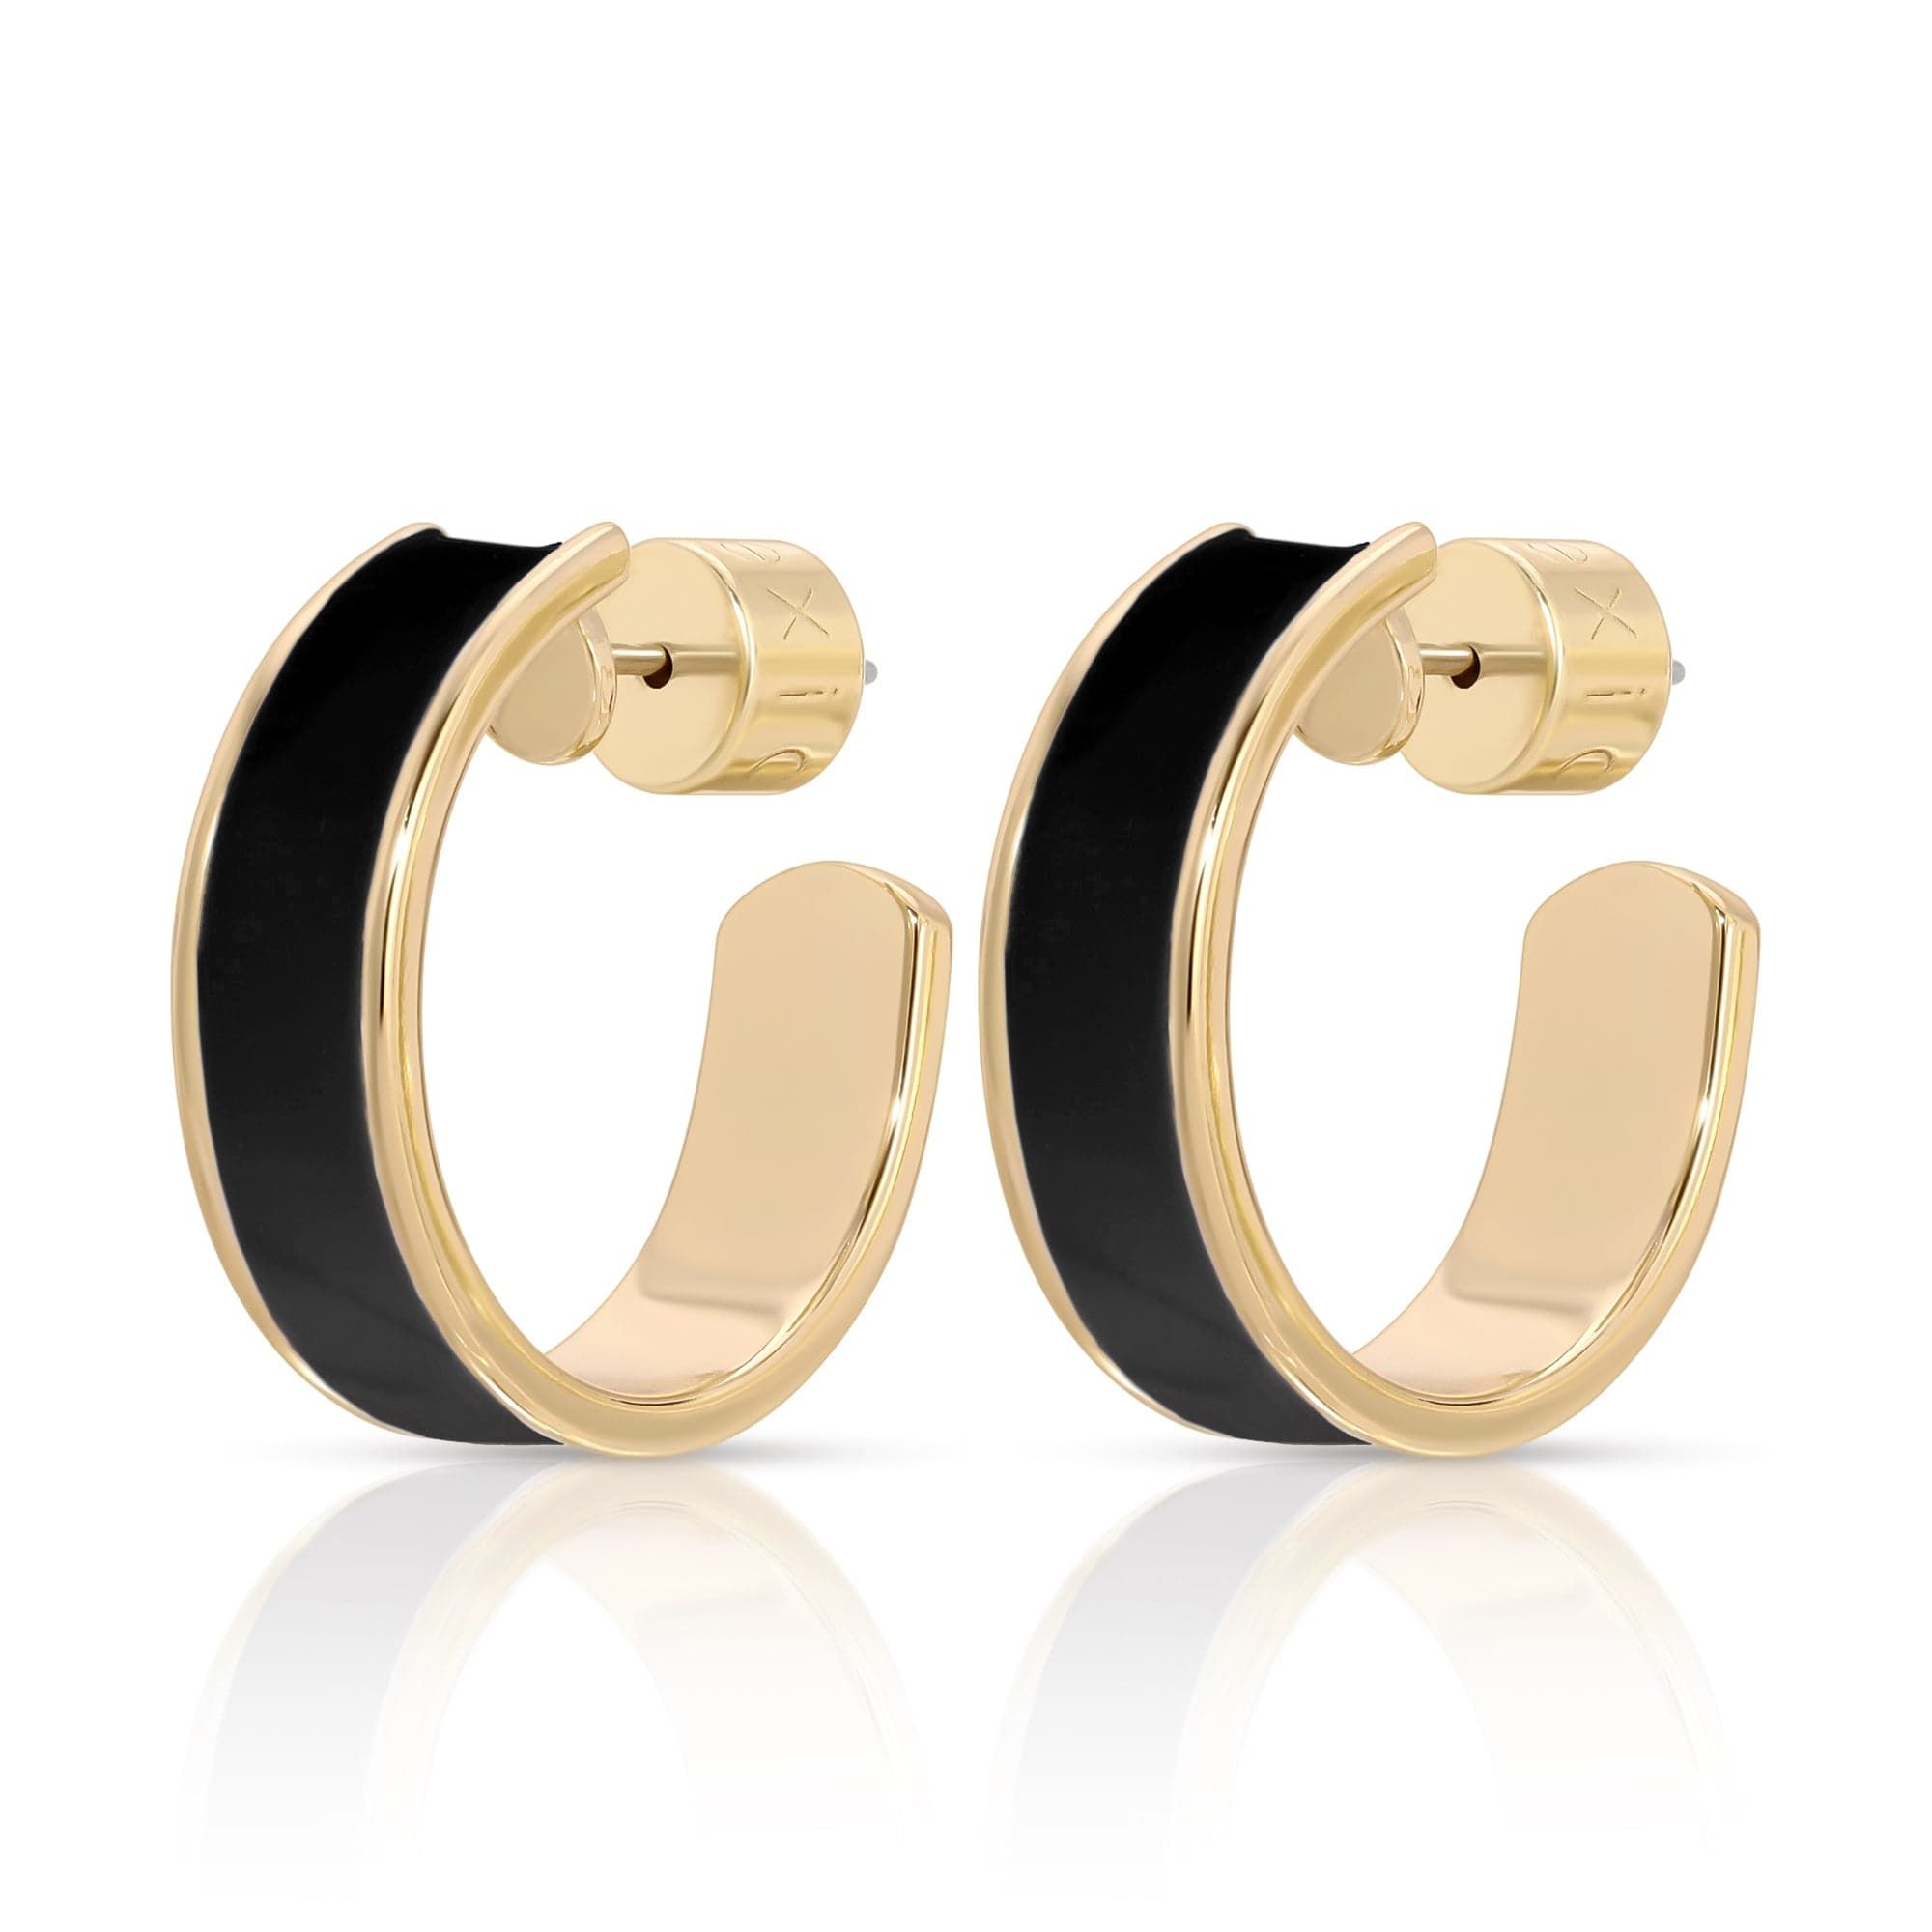 a pair of black and gold hoop earrings